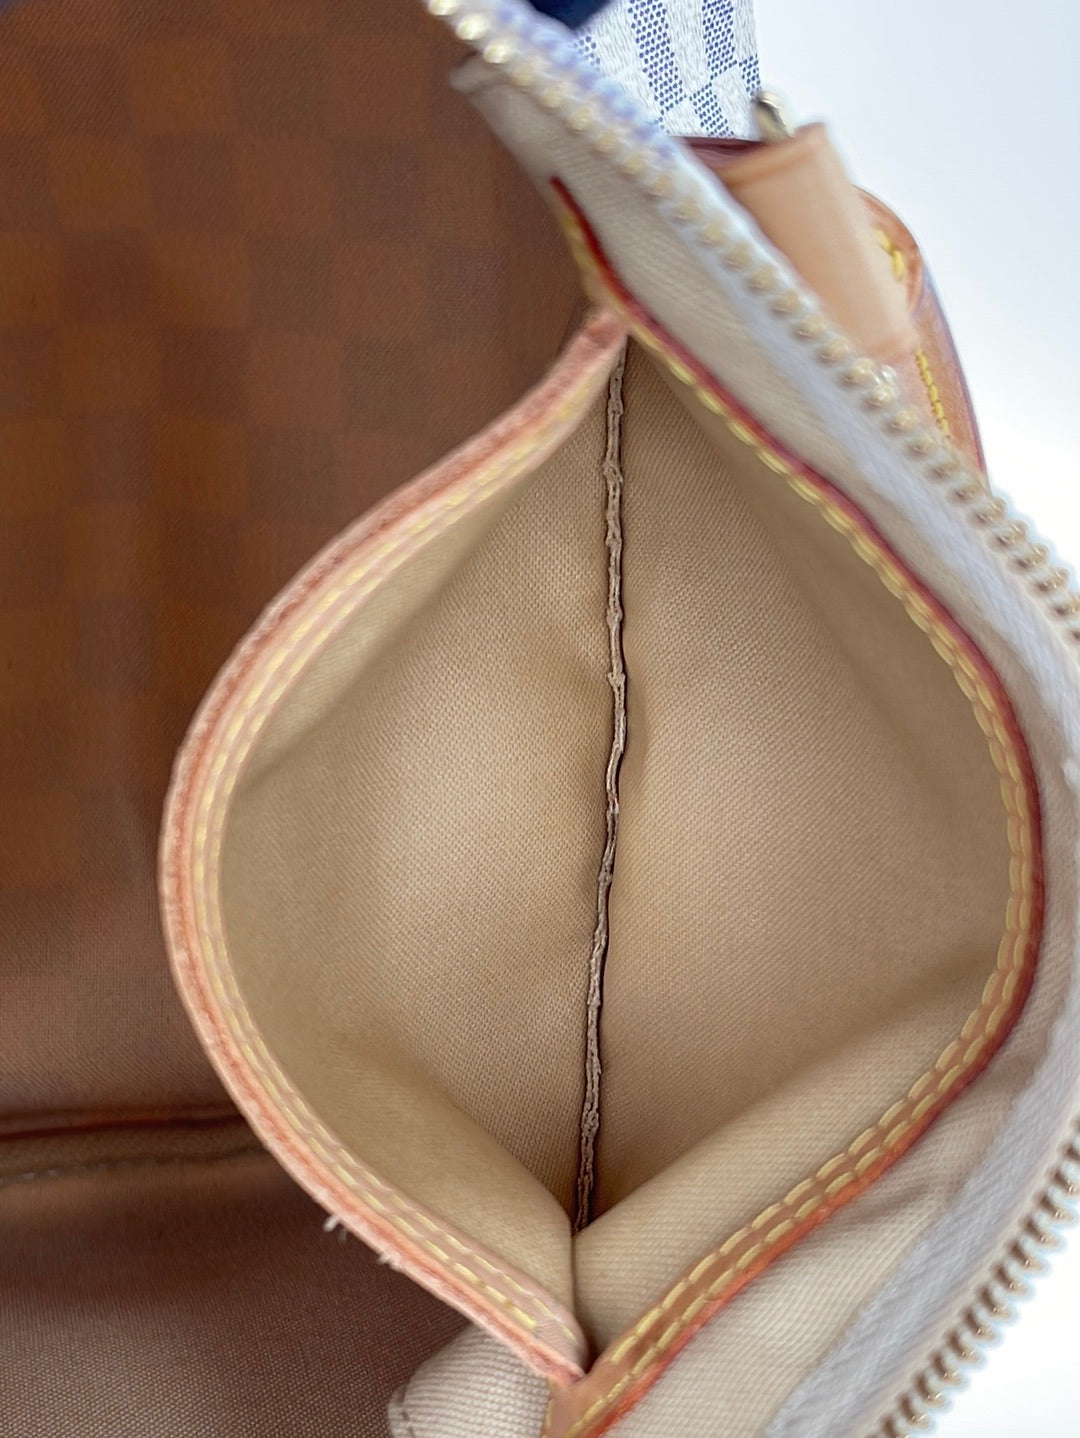 Louis Vuitton Damier Azur Speedy 30 Archives - High Heel Confidential